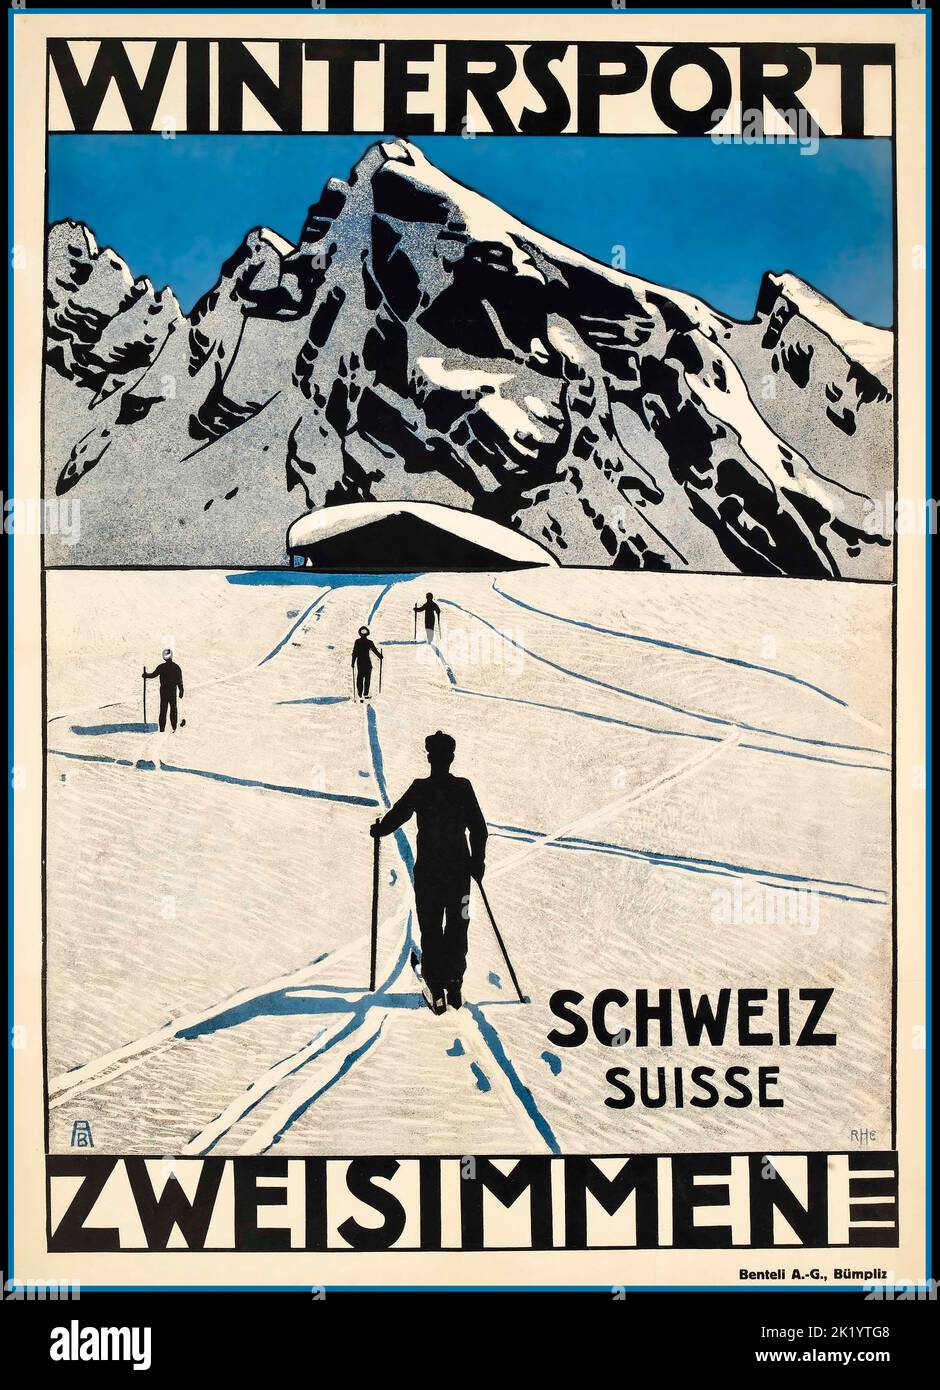 ZWEISIMMEN 1900s Sport invernali Sci Poster Suisse Svizzera Schweiz Suisse ZWEISIMMEN Vintage 1920s Poster da viaggio - Sport invernali - AB Sport invernali ZWEISIMMEN, c.1920 Foto Stock